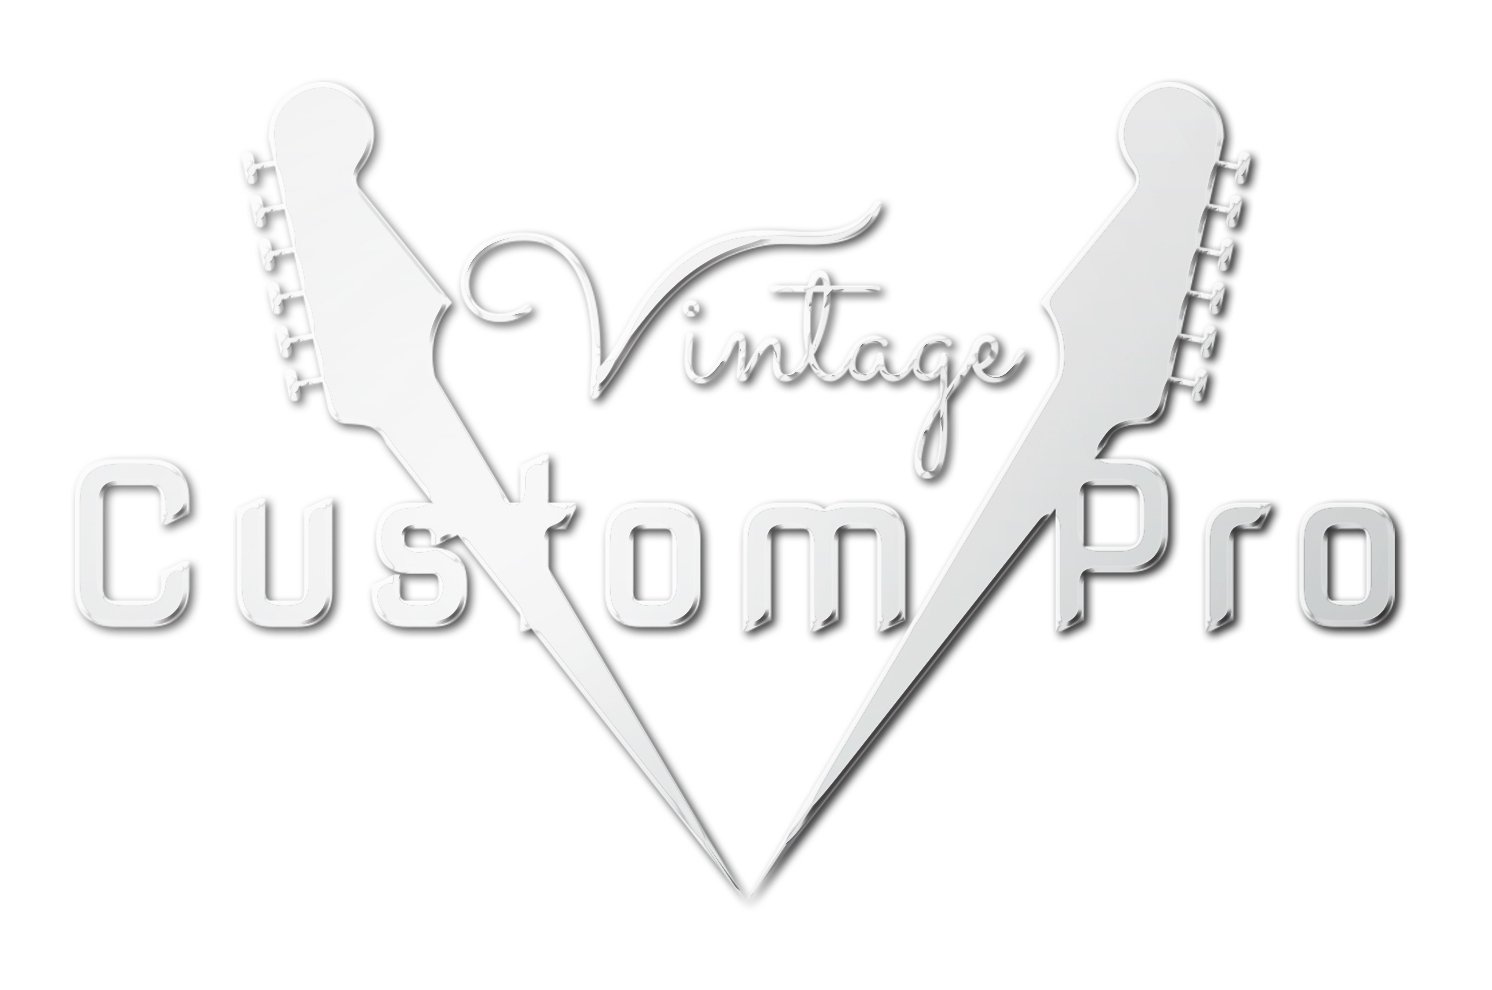 Vintage* V100TSB Electric Guitar, Electric Guitar for sale at Richards Guitars.